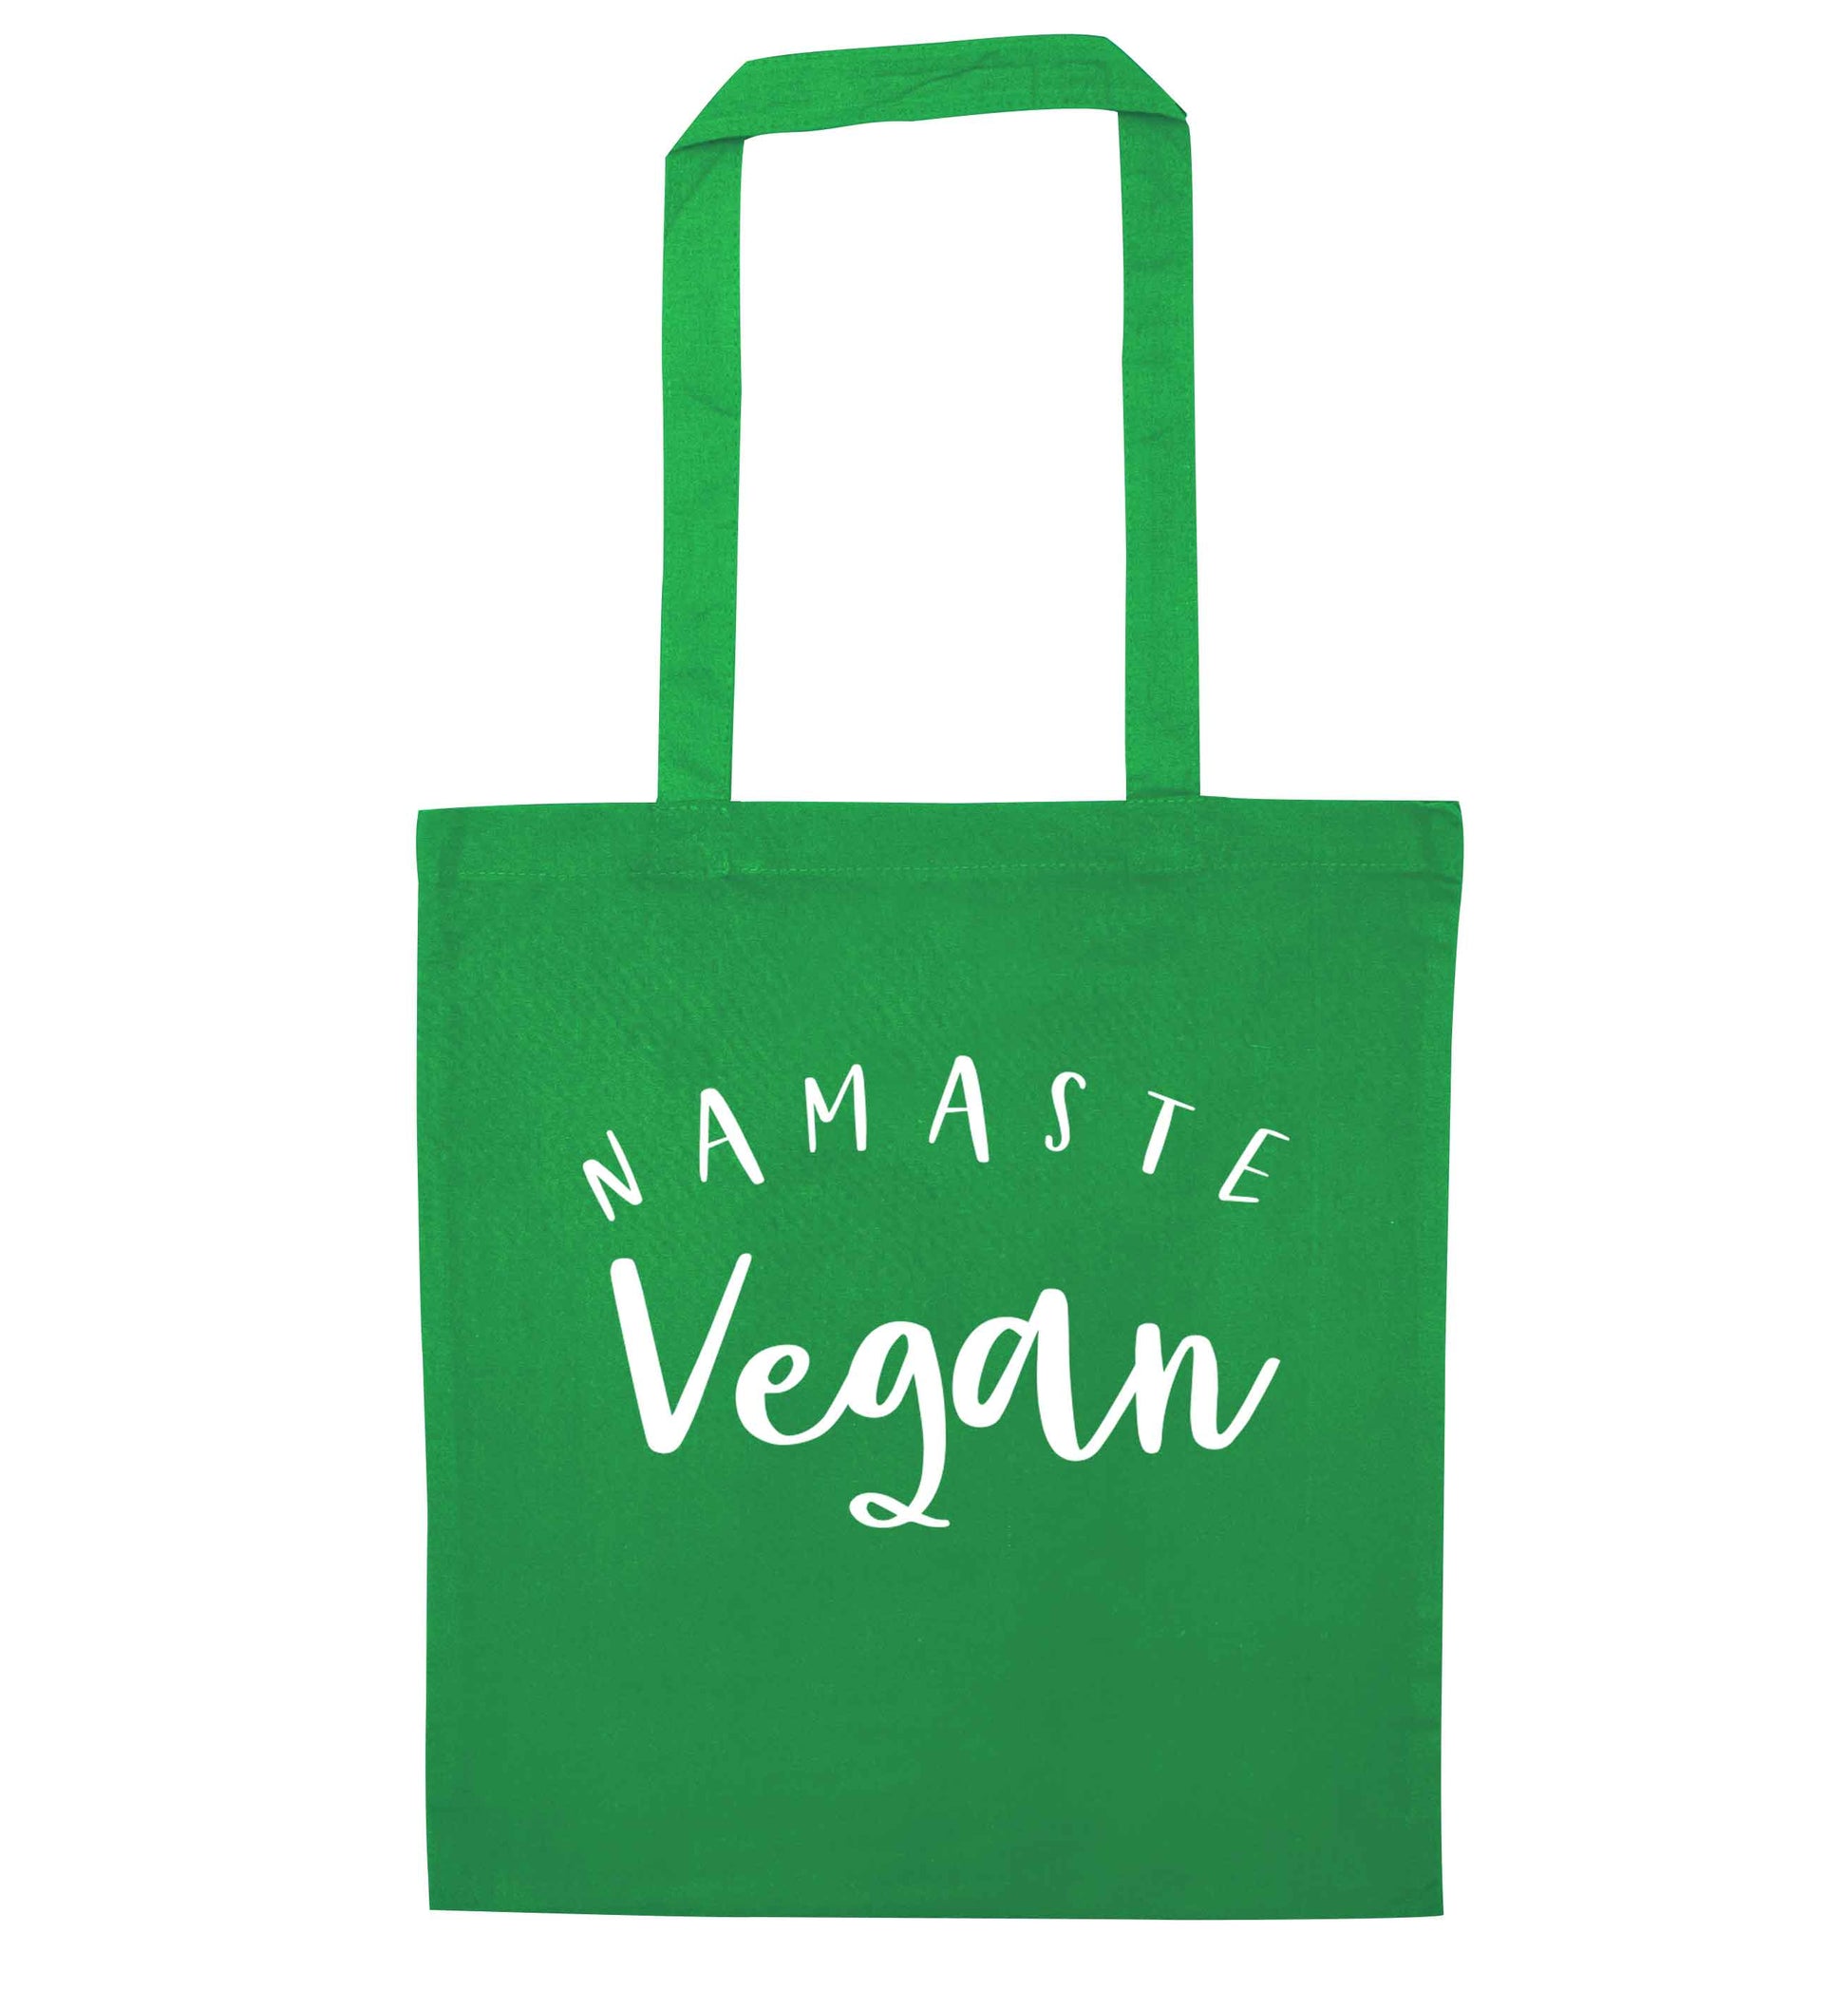 Namaste vegan green tote bag